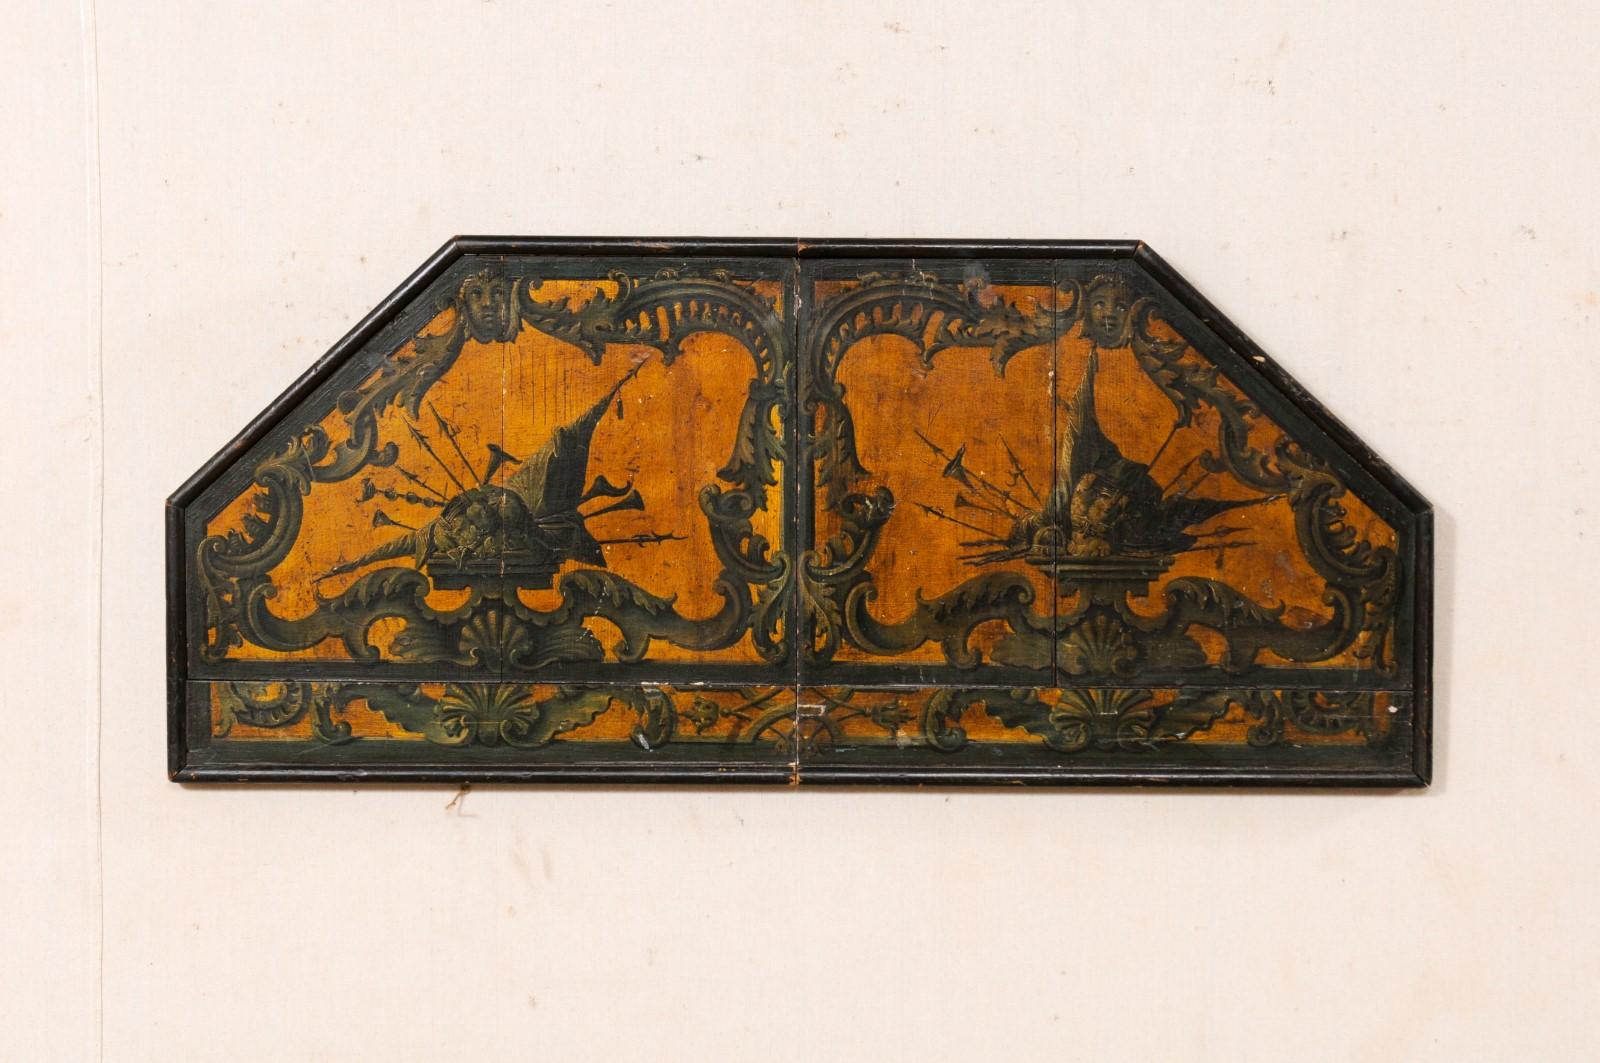 Une plaque murale italienne peinte à la main du 18ème siècle. Cette décoration murale d'Italie a une forme de demi-octogone avec une section plate plus longue au bas de la plaque. Il a été peint à la main dans un motif de cornes, de flèches, d'anges